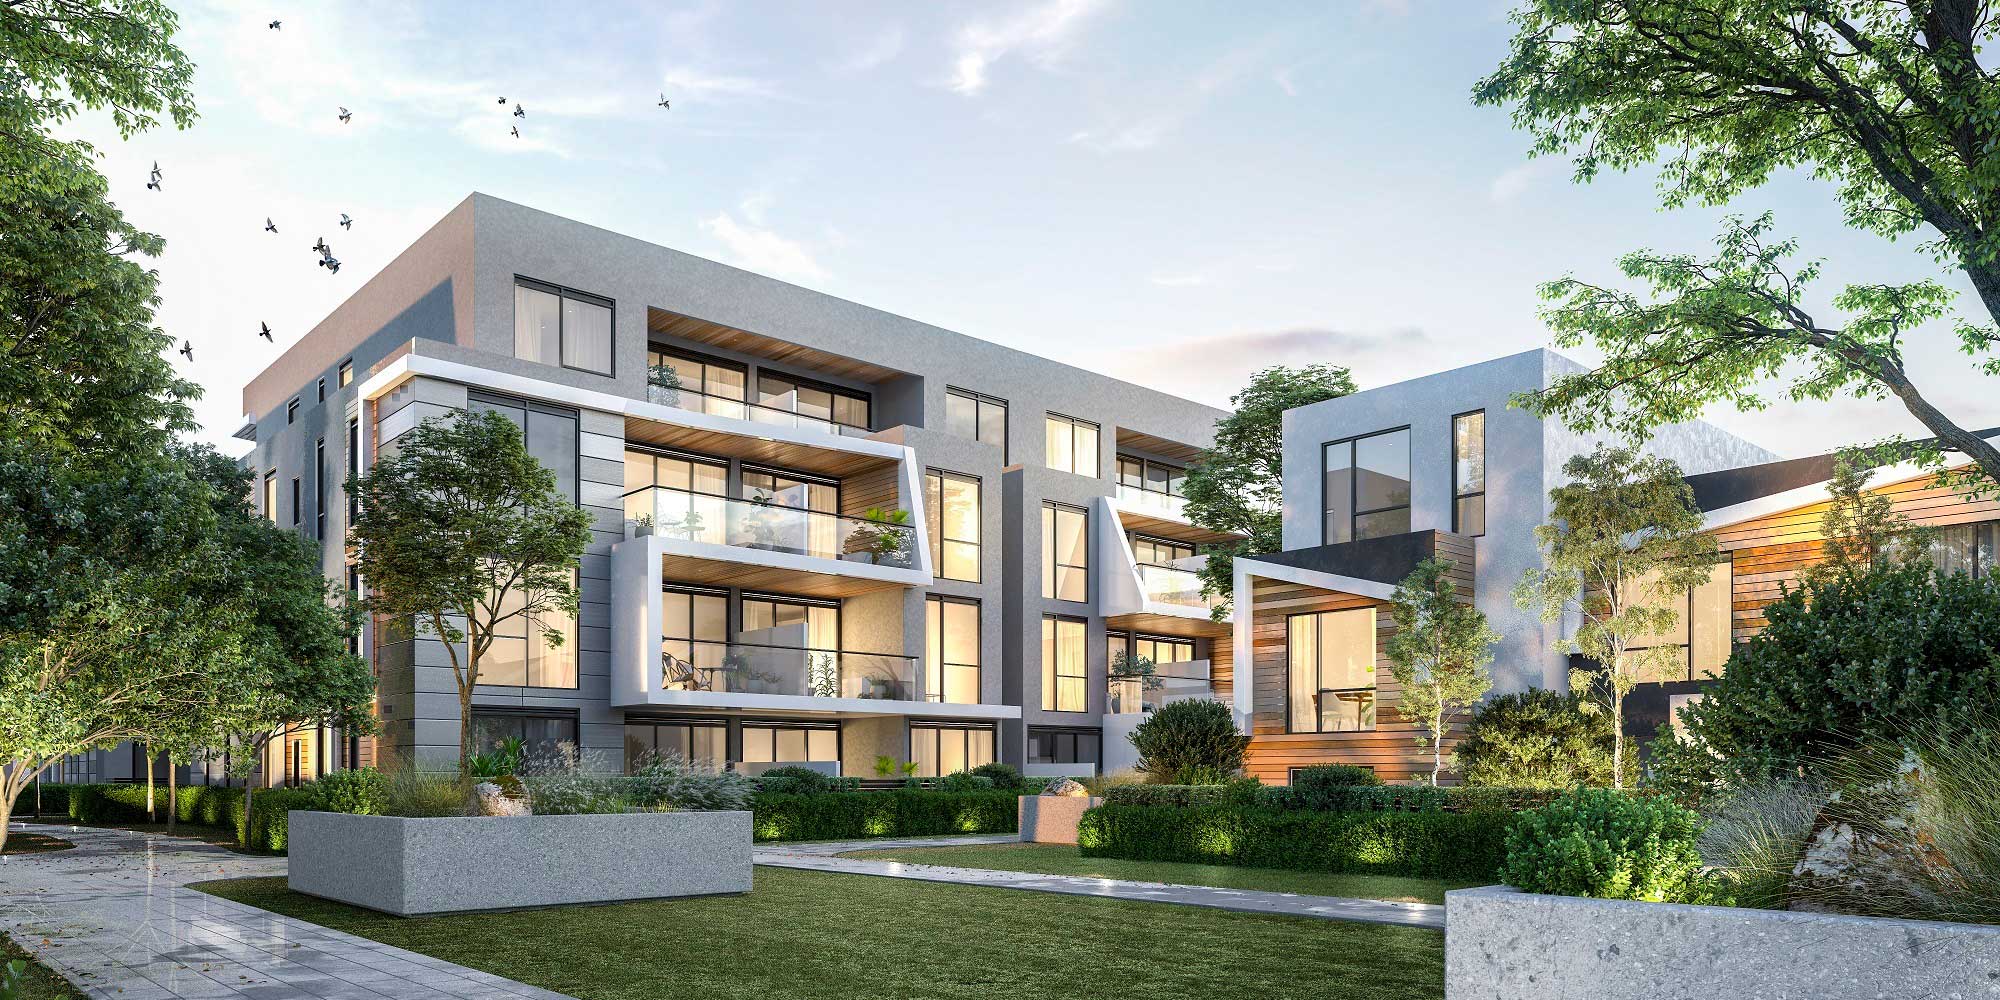 VION Property | real estate agency | Suite 3.03/424 St Kilda Rd, Melbourne VIC 3004, Australia | 61491088186 OR +61 61 491 088 186